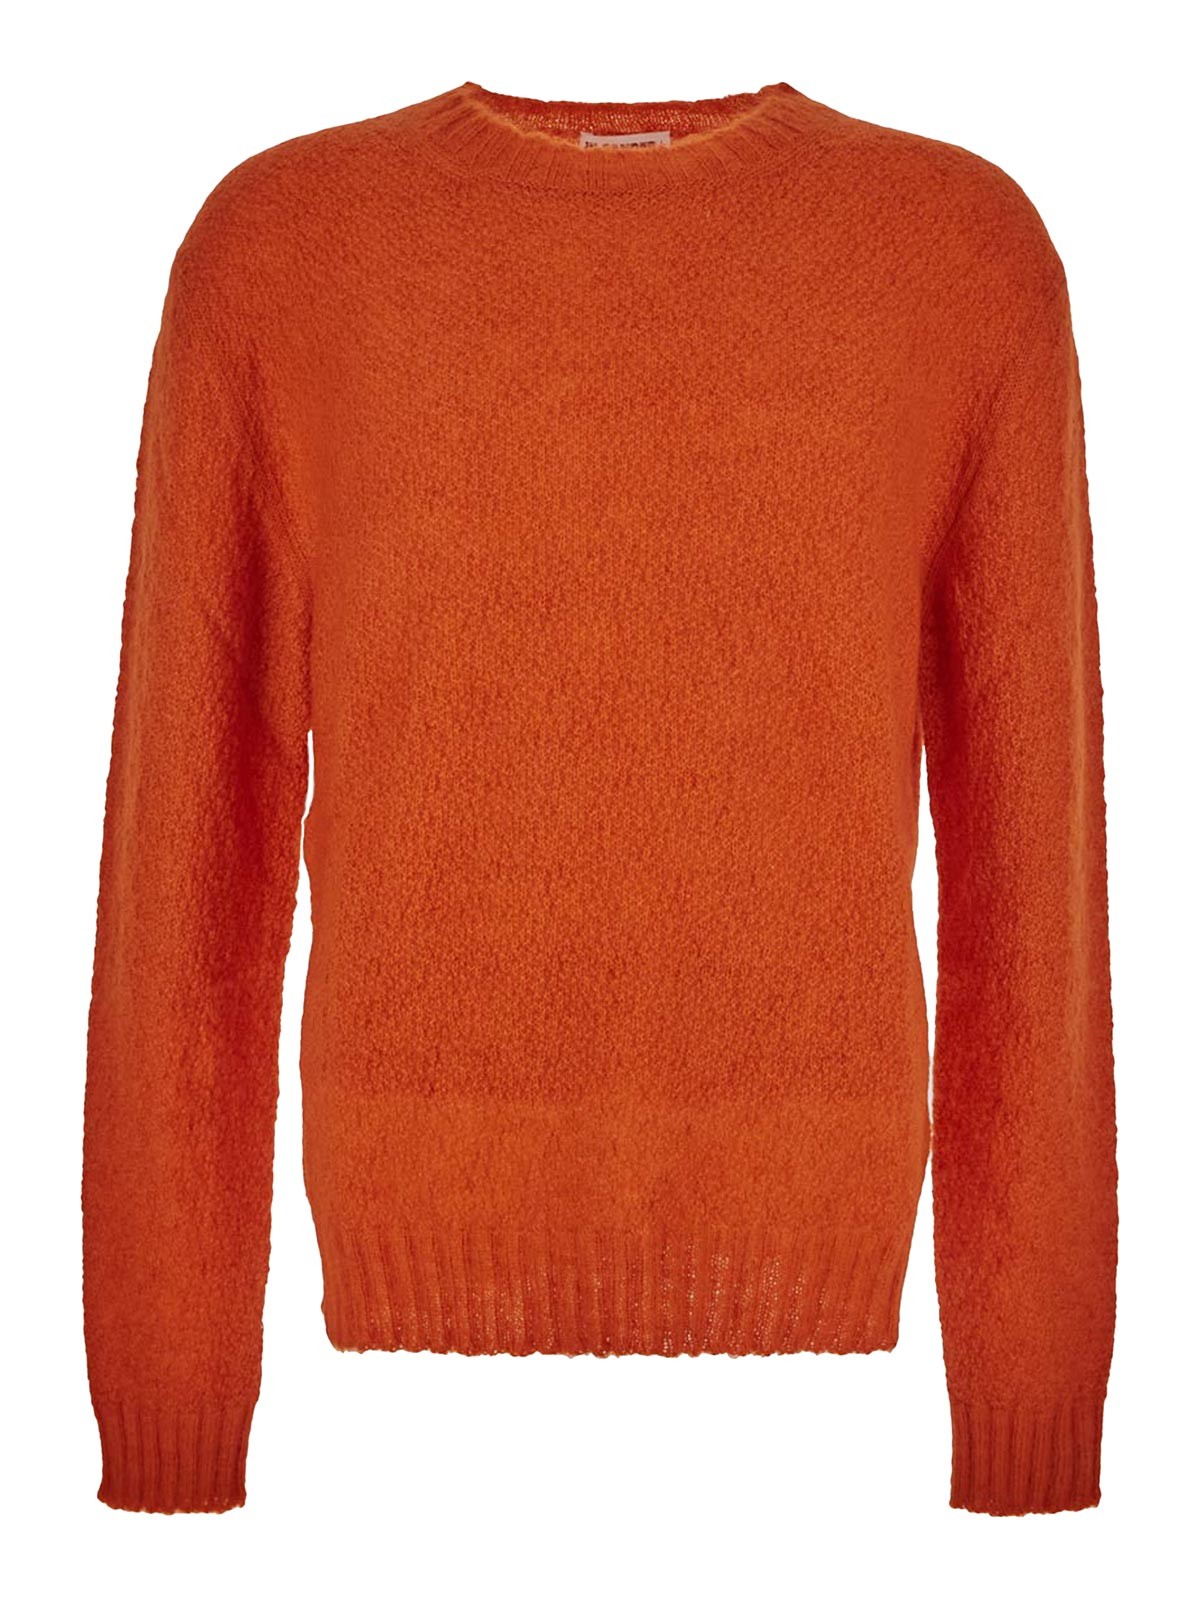 Jil Sander Poppy Orange Sweater In Naranja